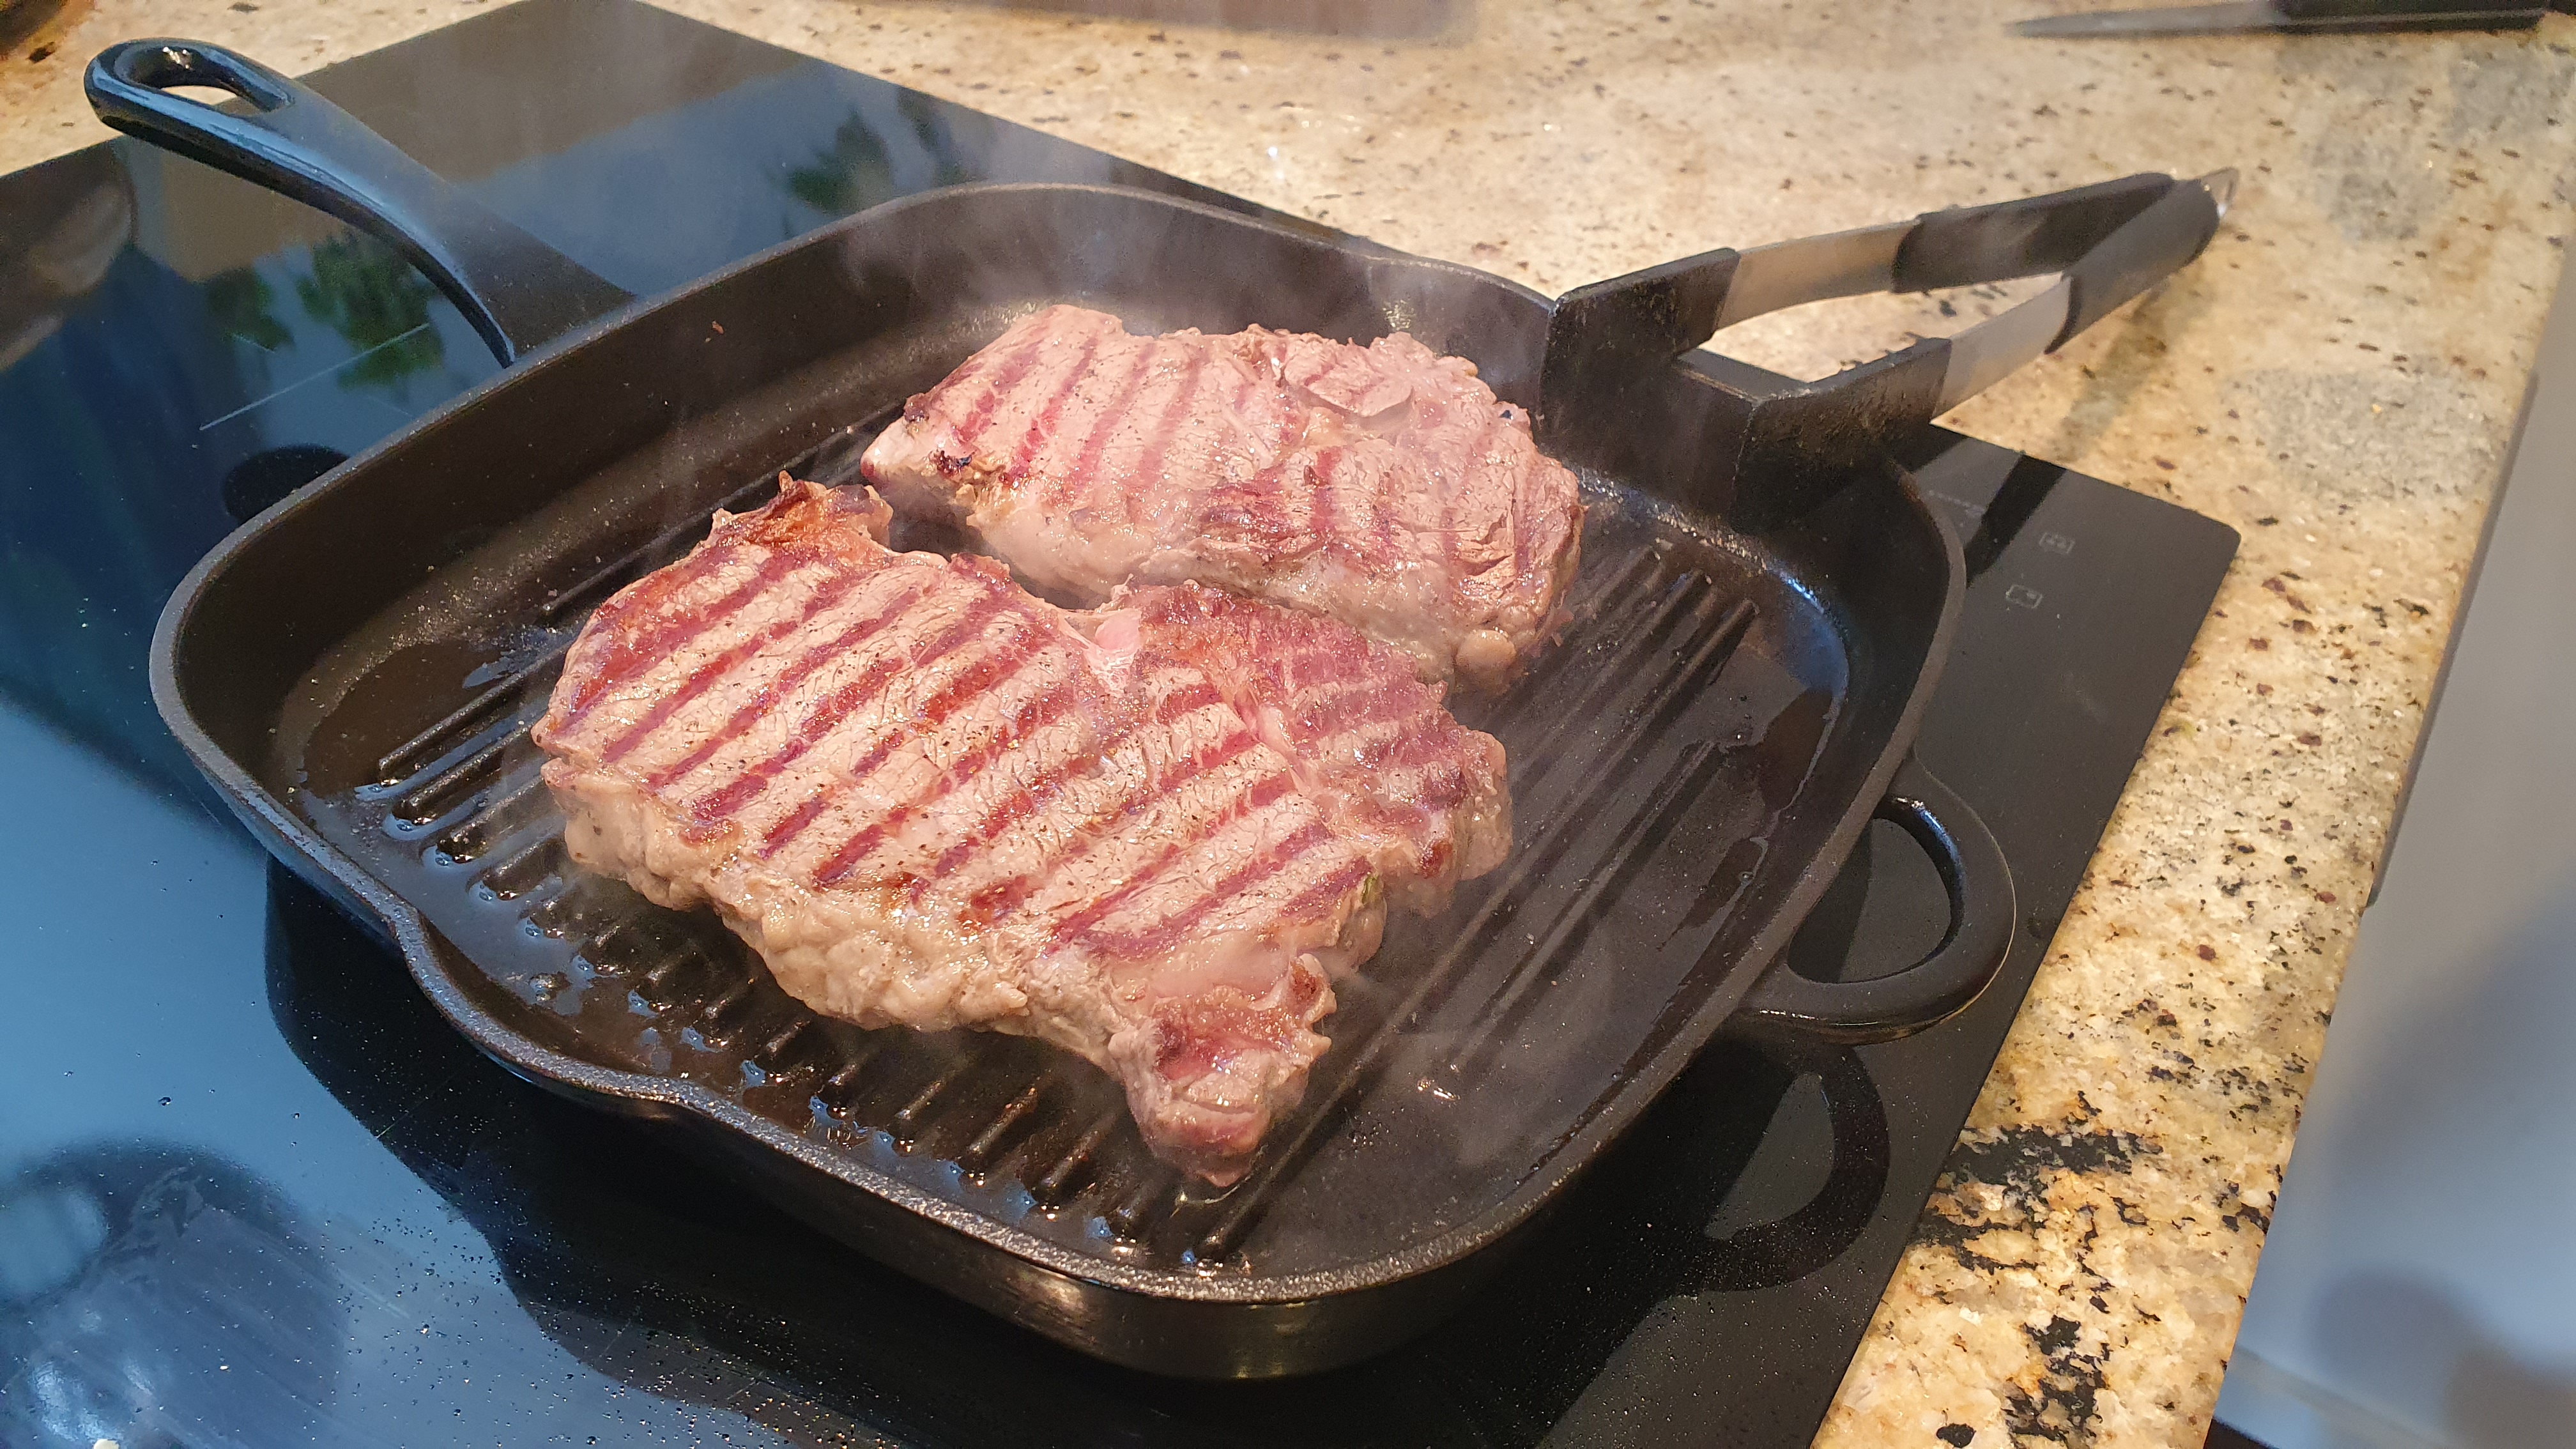 Poriadne si rozpálime steakovú panvicu s vrúbkami na vysokú teplotu. Olej netreba, pretože sme olejovali mäso. Steak z jednej strany osolíme a osolenou stranou položíme na rozpálenú panvicu. Osolíme hornú stranu a presne po dvoch minútach ho otočíme. Aj tejto strane doprajeme na panvici dve minúty.